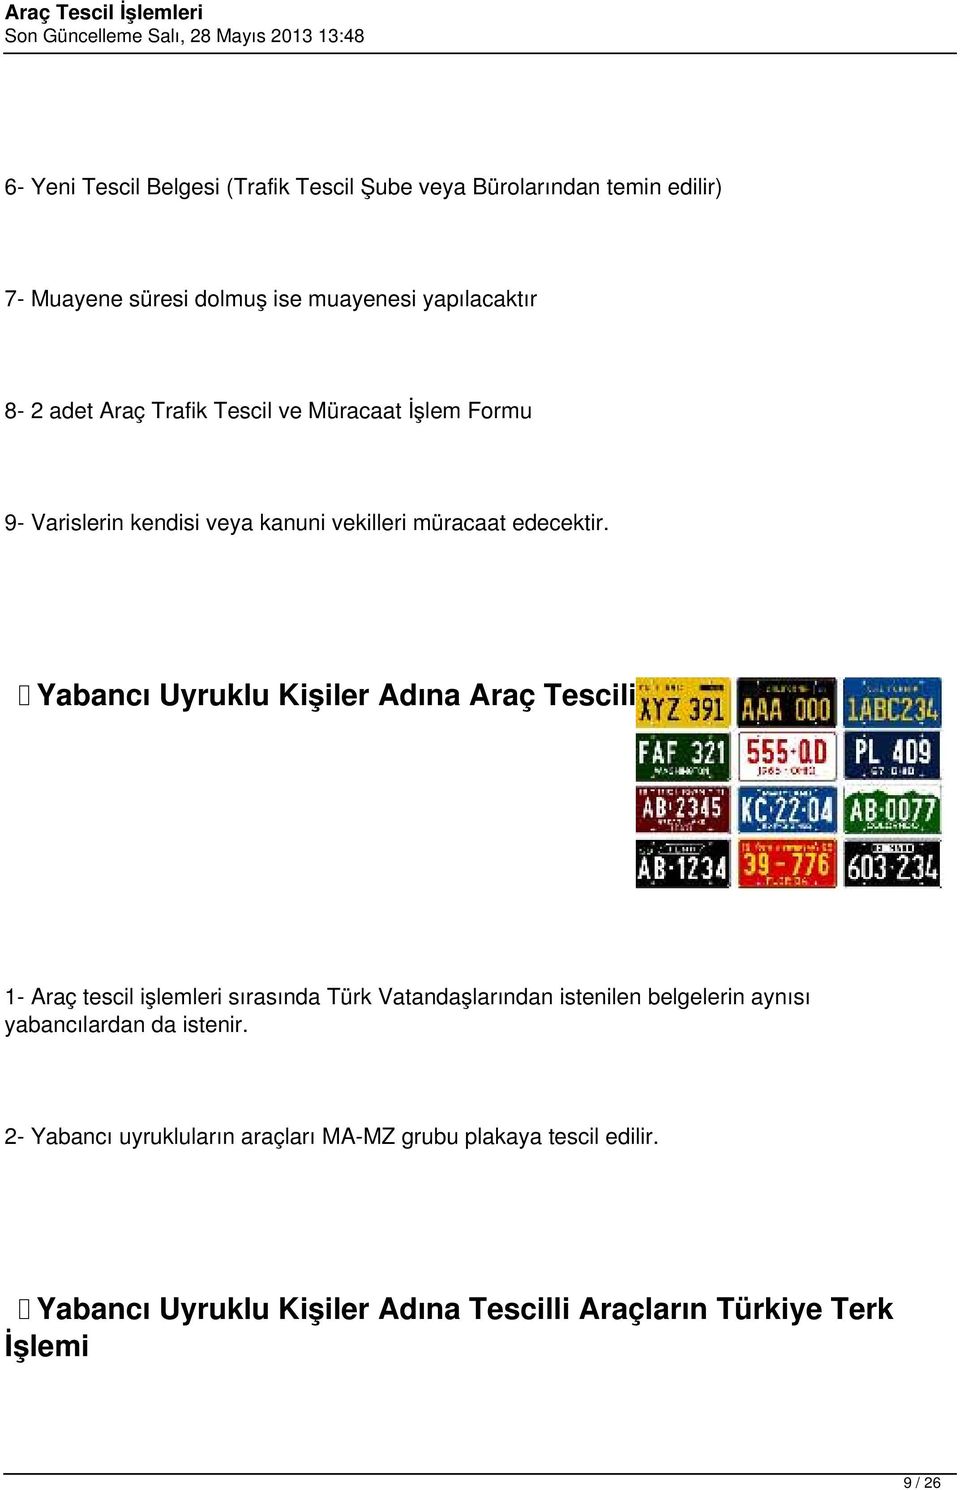 Yabancı Uyruklu Kişiler Adına Araç Tescili 1- Araç tescil işlemleri sırasında Türk Vatandaşlarından istenilen belgelerin aynısı